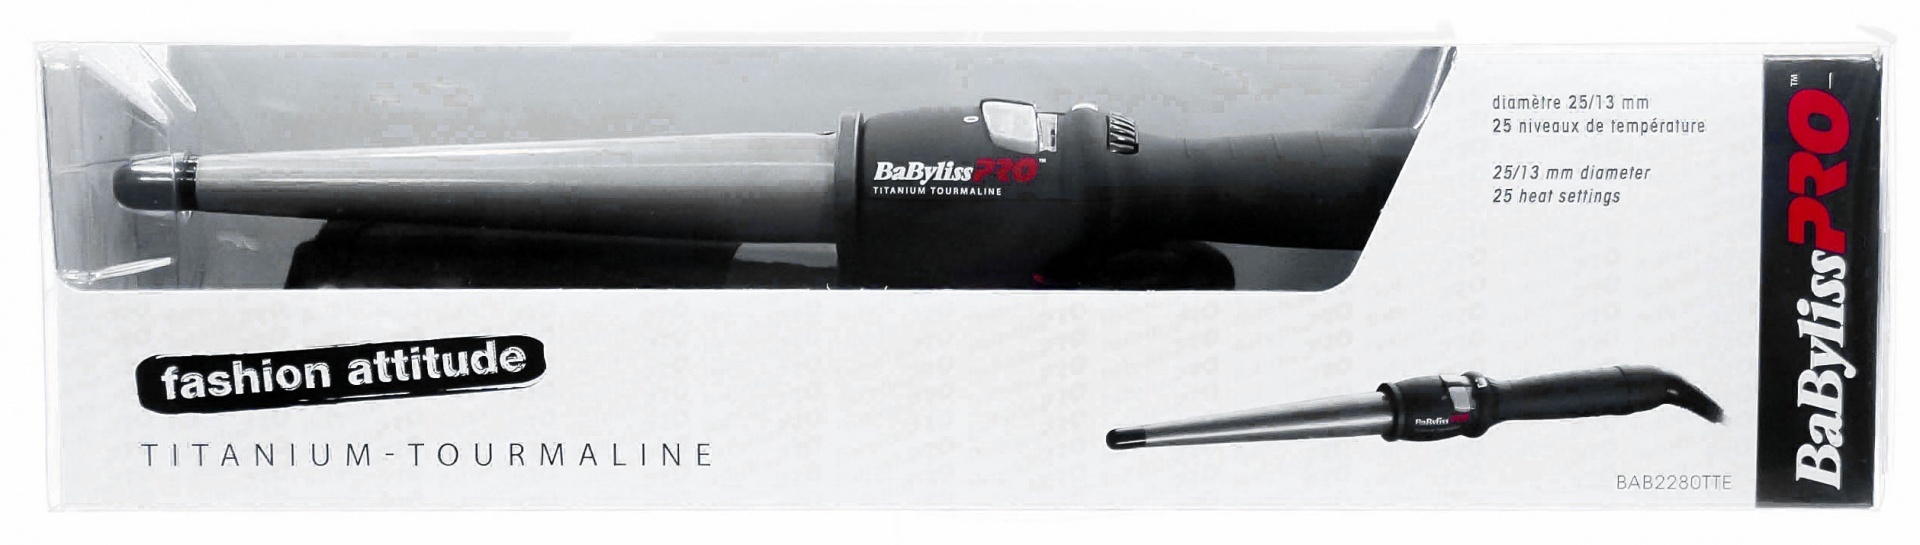 Профессиональная конусная плойка BaByliss PRO Titanium Tourmaline BAB2280TTE 13-25 мм - 7